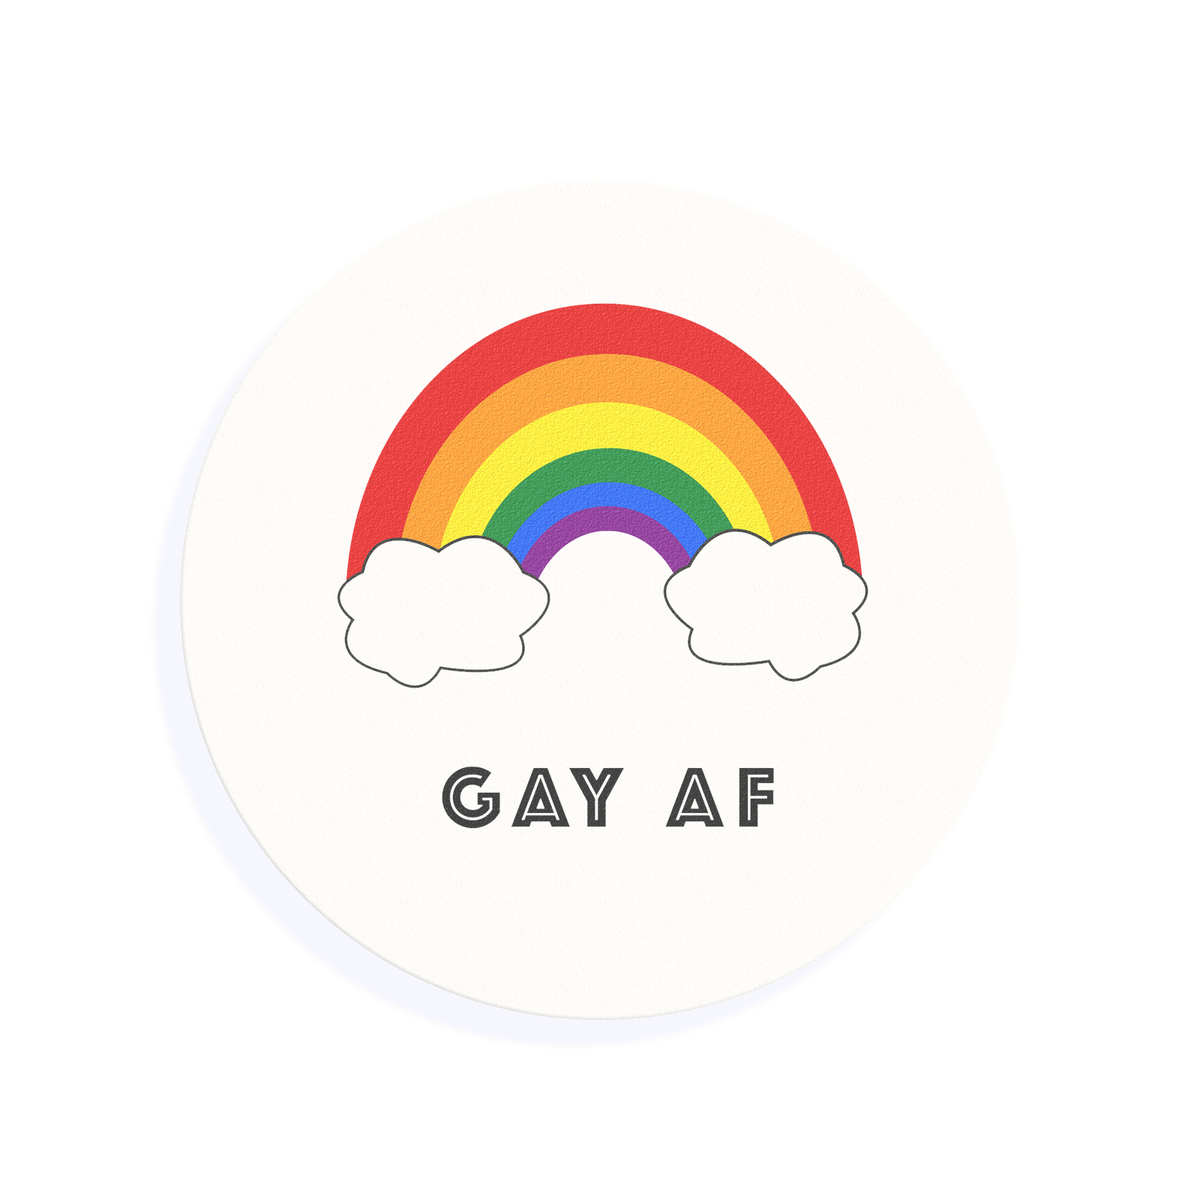 GAY AF Pride Cocktail Topper